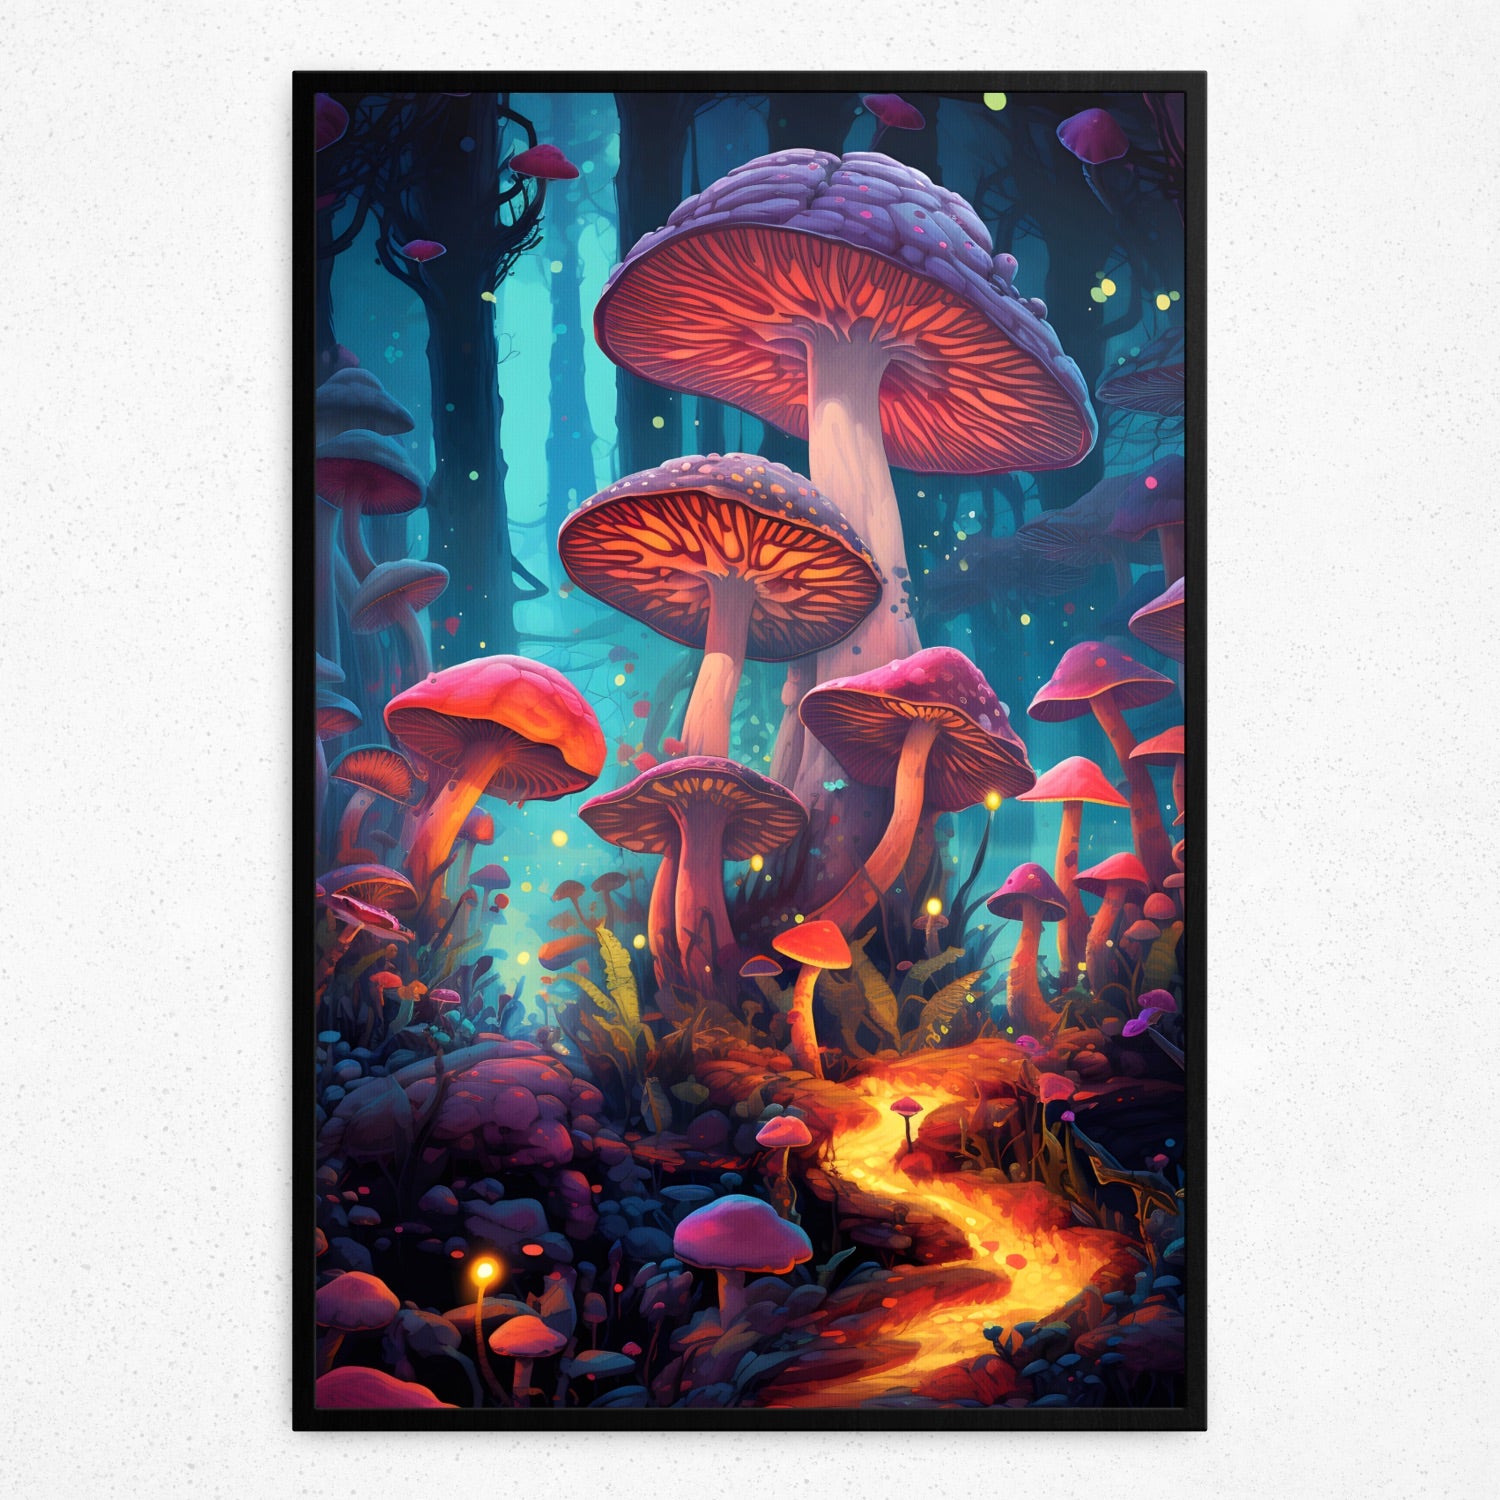 Enchanted Shroomscapes (Framed Poster)